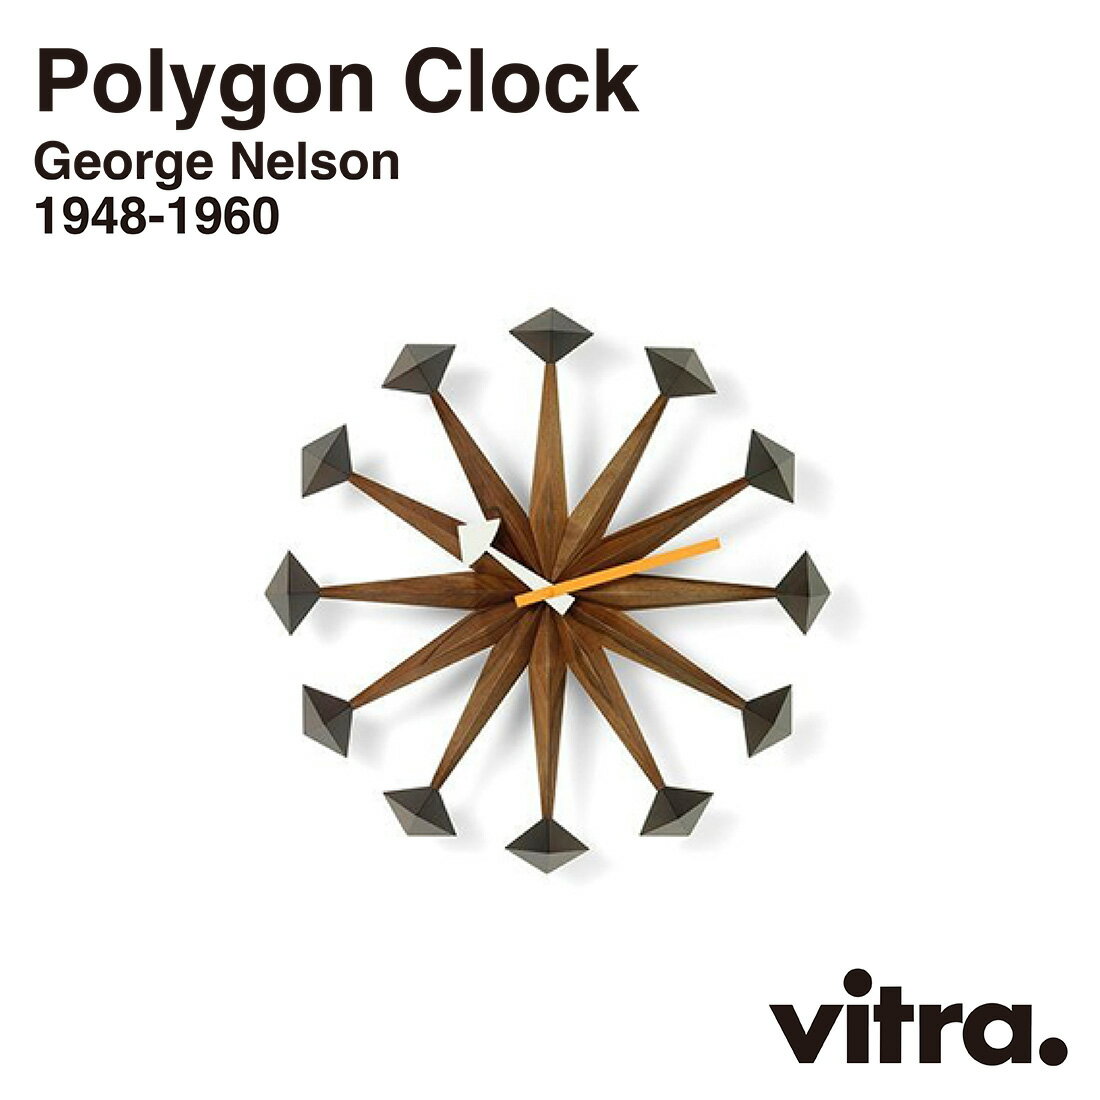 vitra ヴィトラ Polygon Clock ポリゴンクロック Wall Clocks ウォールクロック GeorgeNelson ジョージ・ネルソン 時計 掛時計 インテリア 北欧 スイス